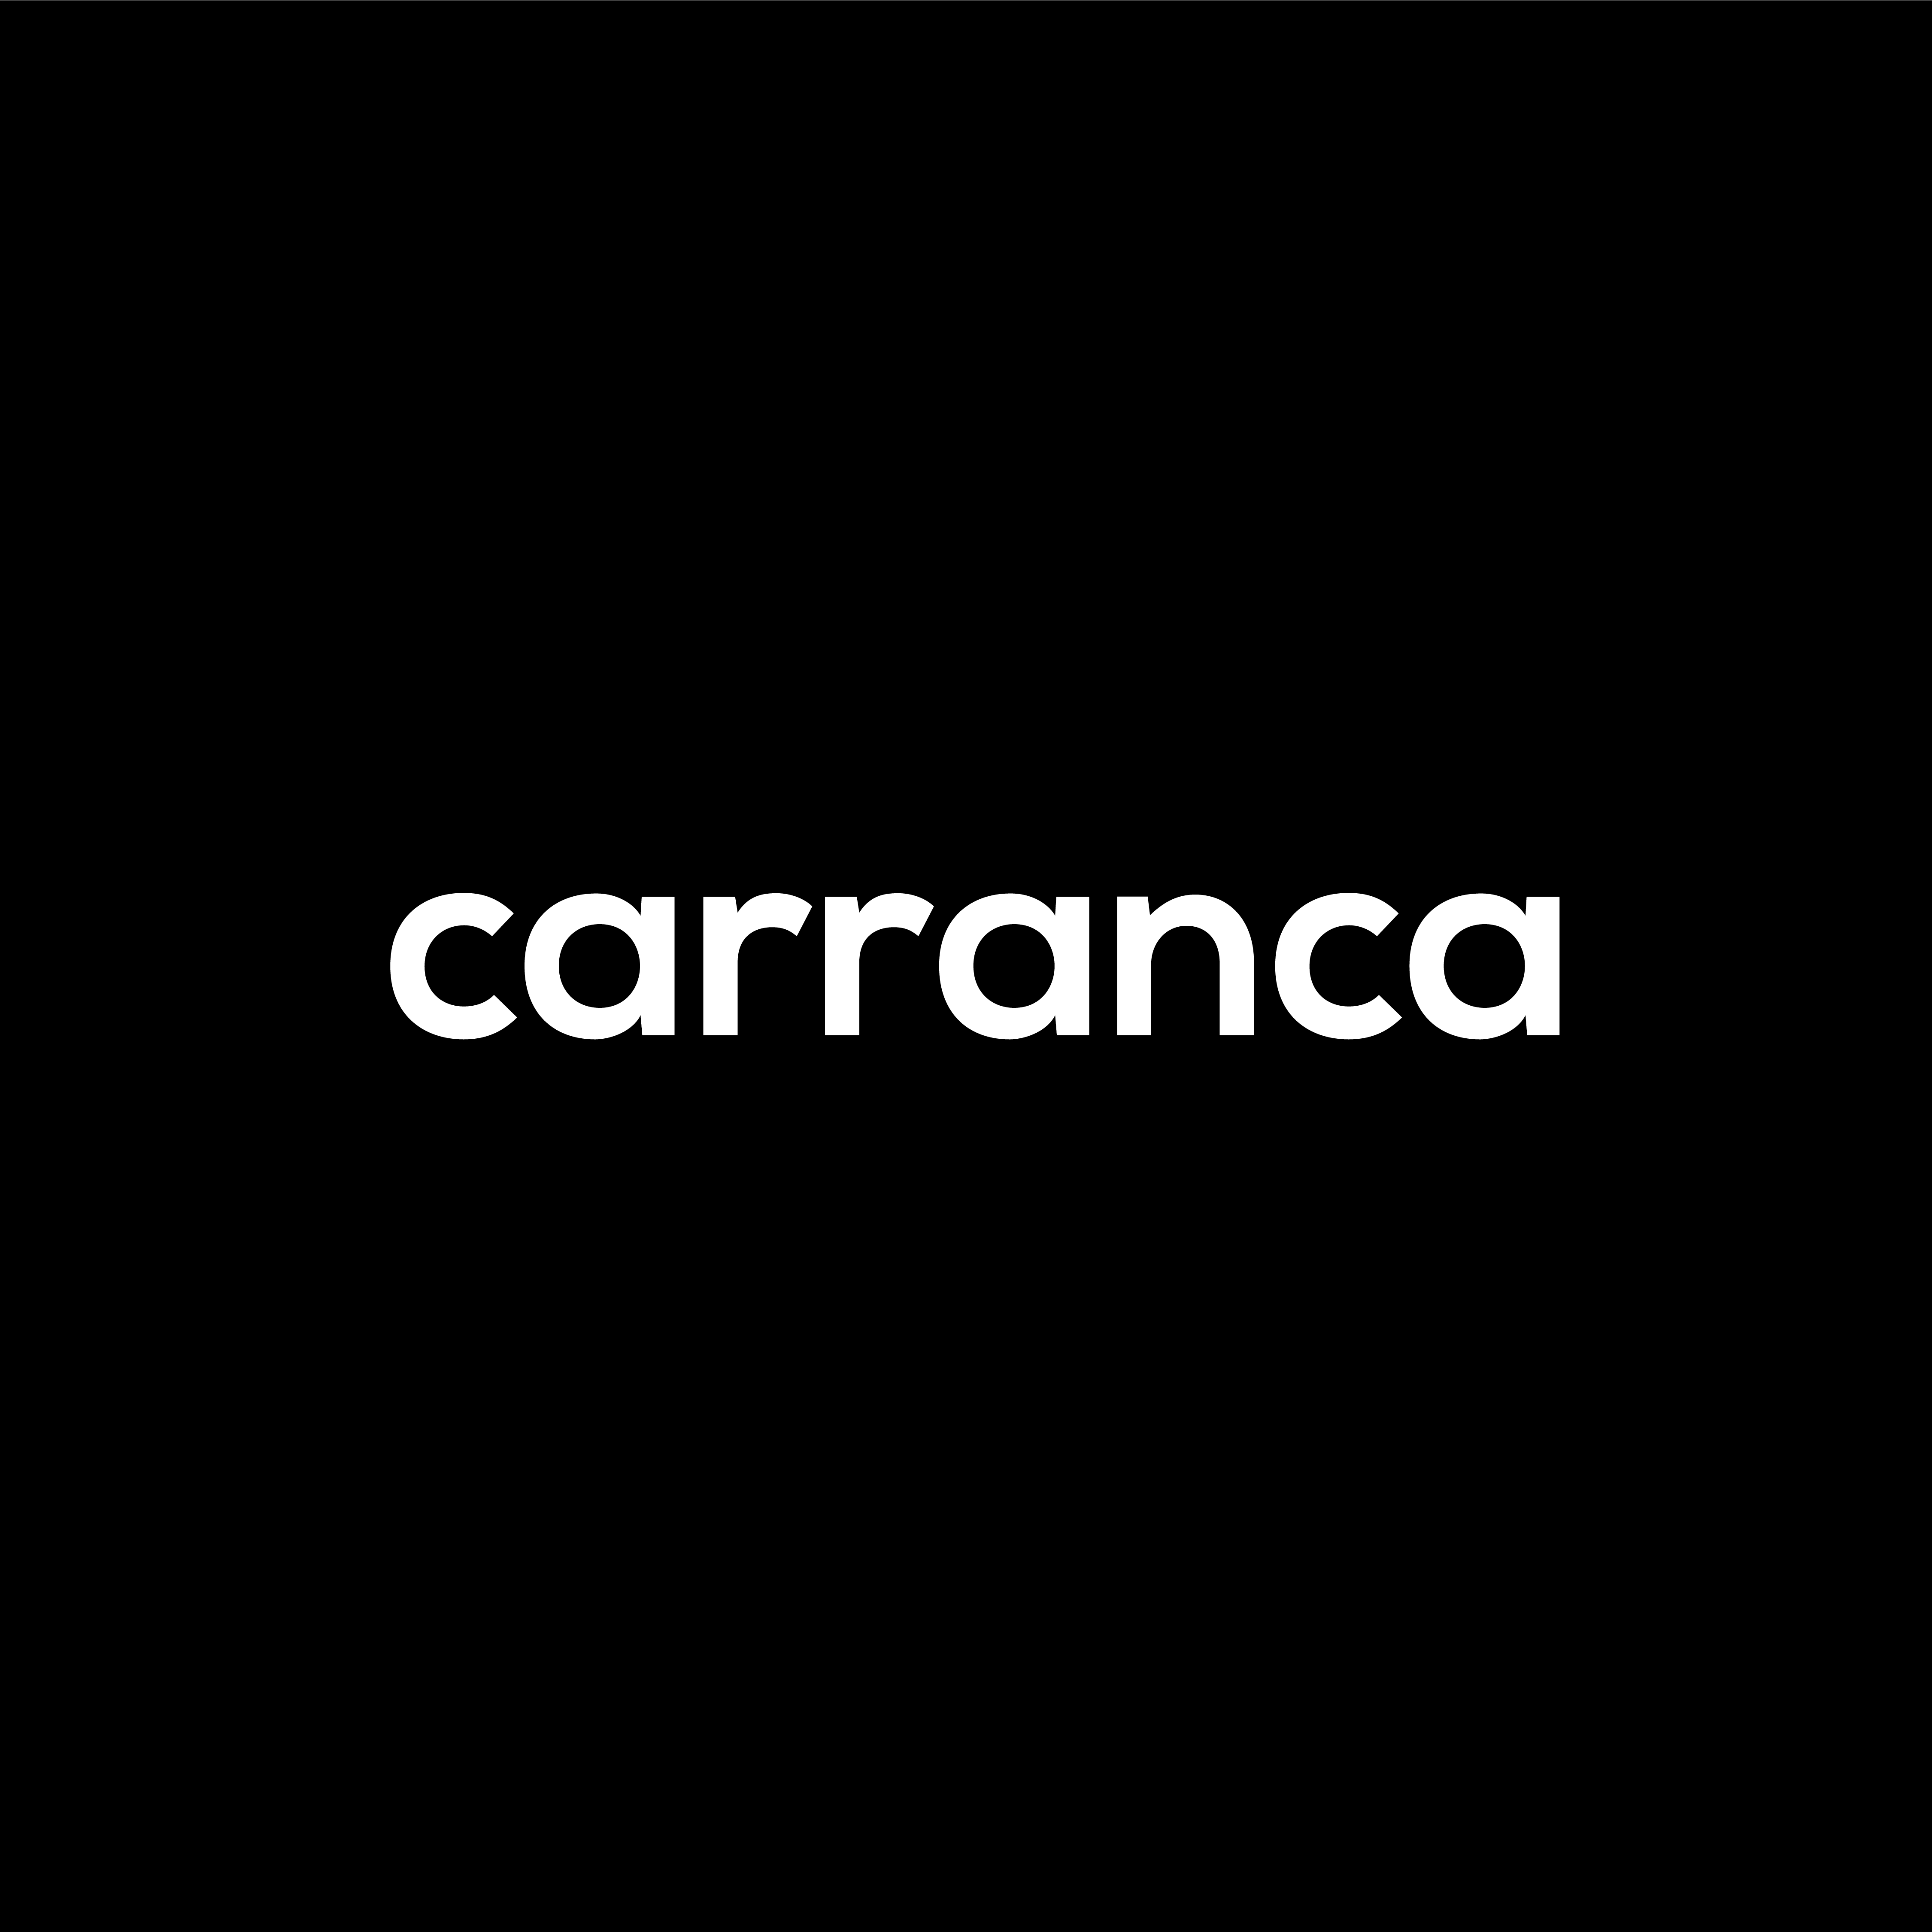 Carranca